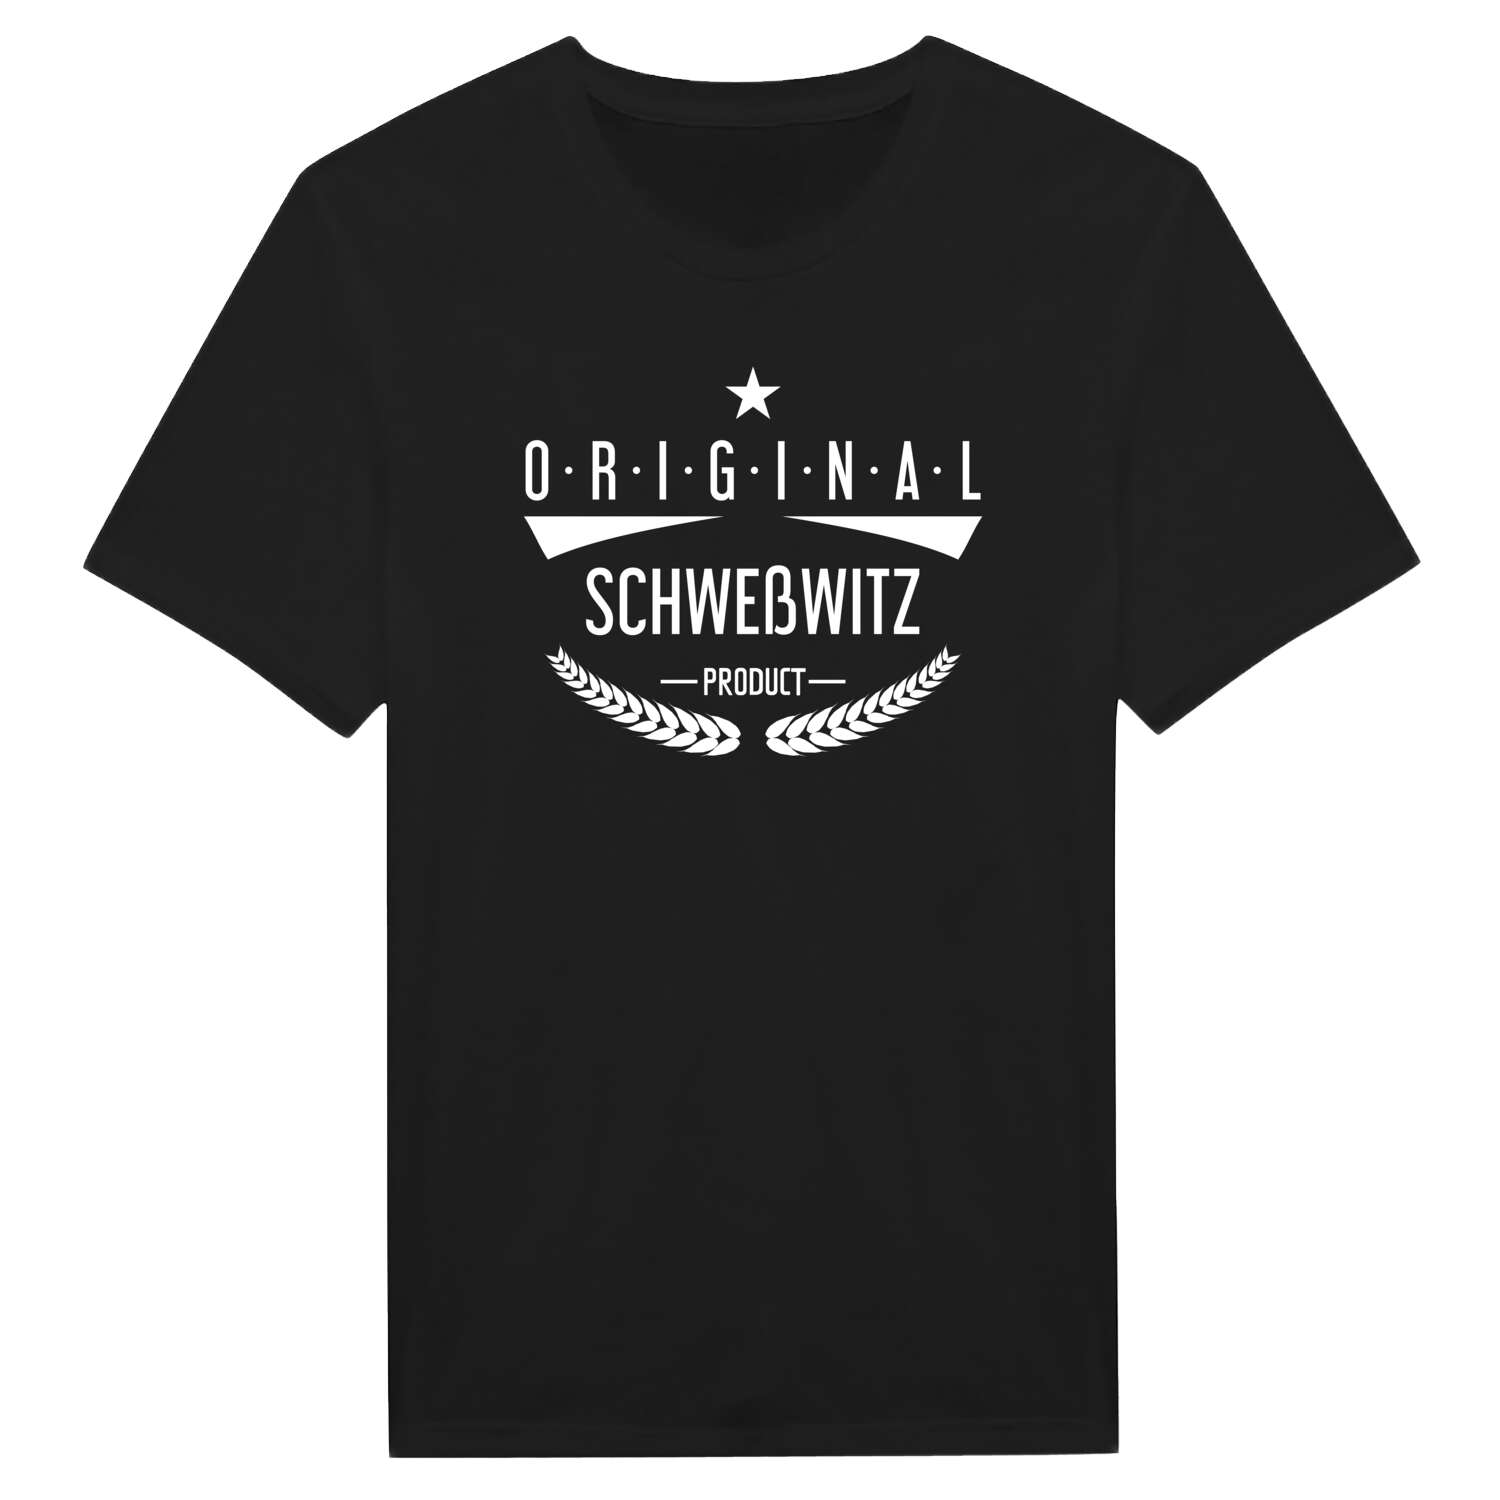 Schweßwitz T-Shirt »Original Product«